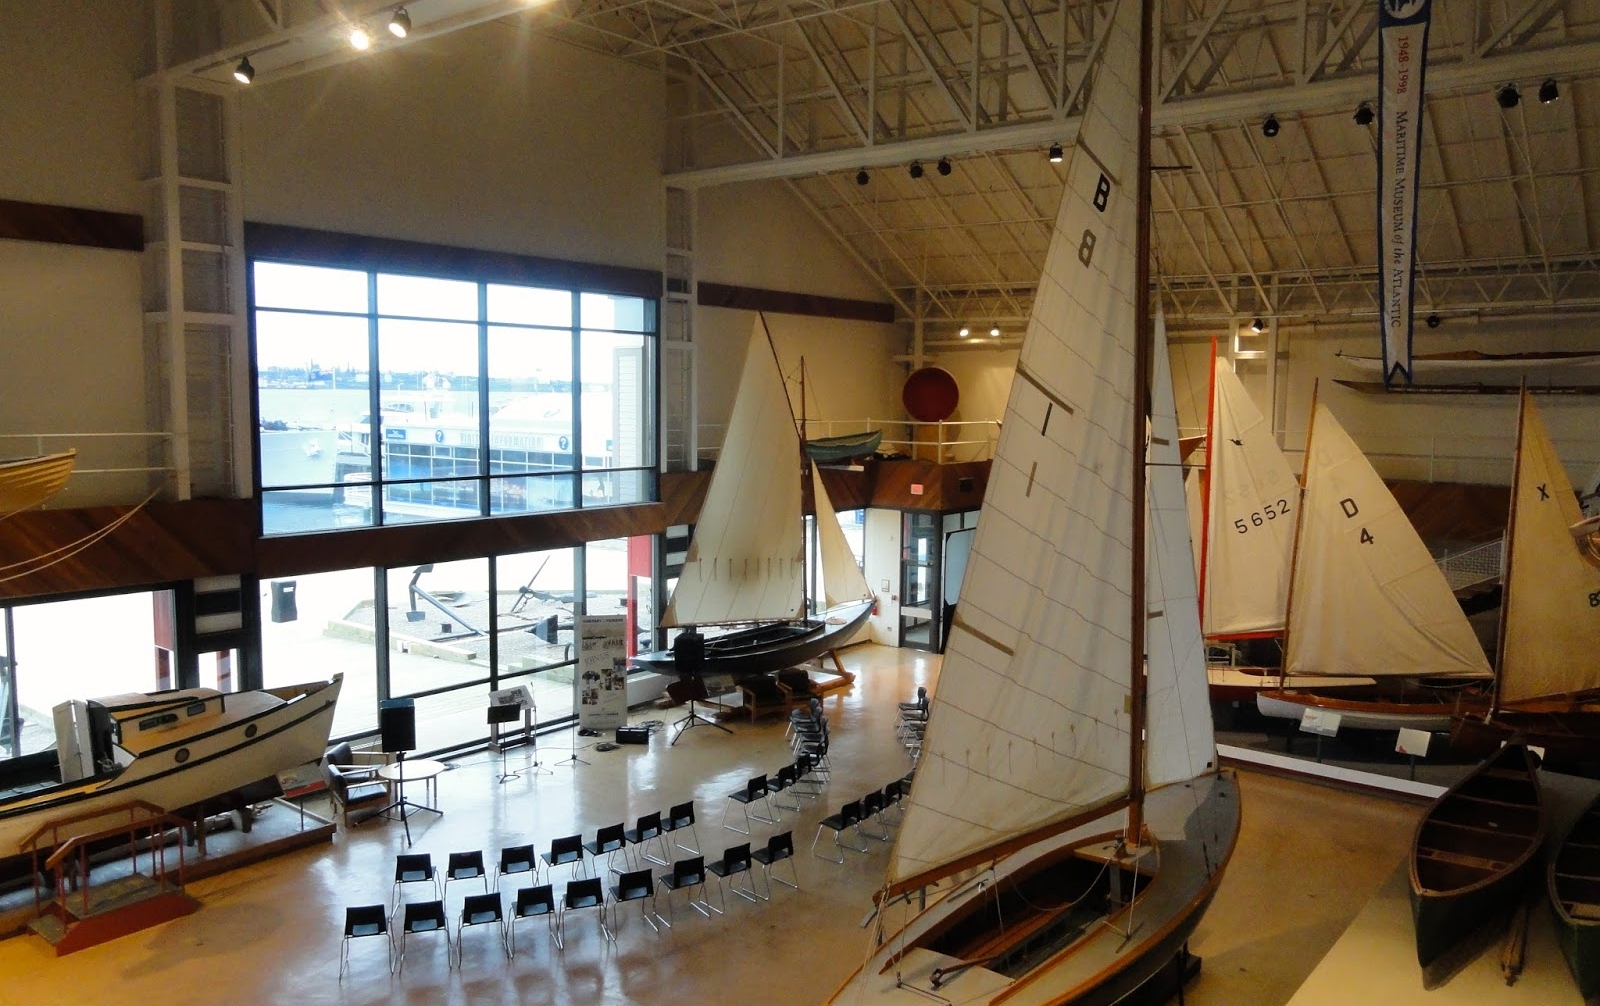 Maritime Museum of the Atlantic || Halifax || Canada